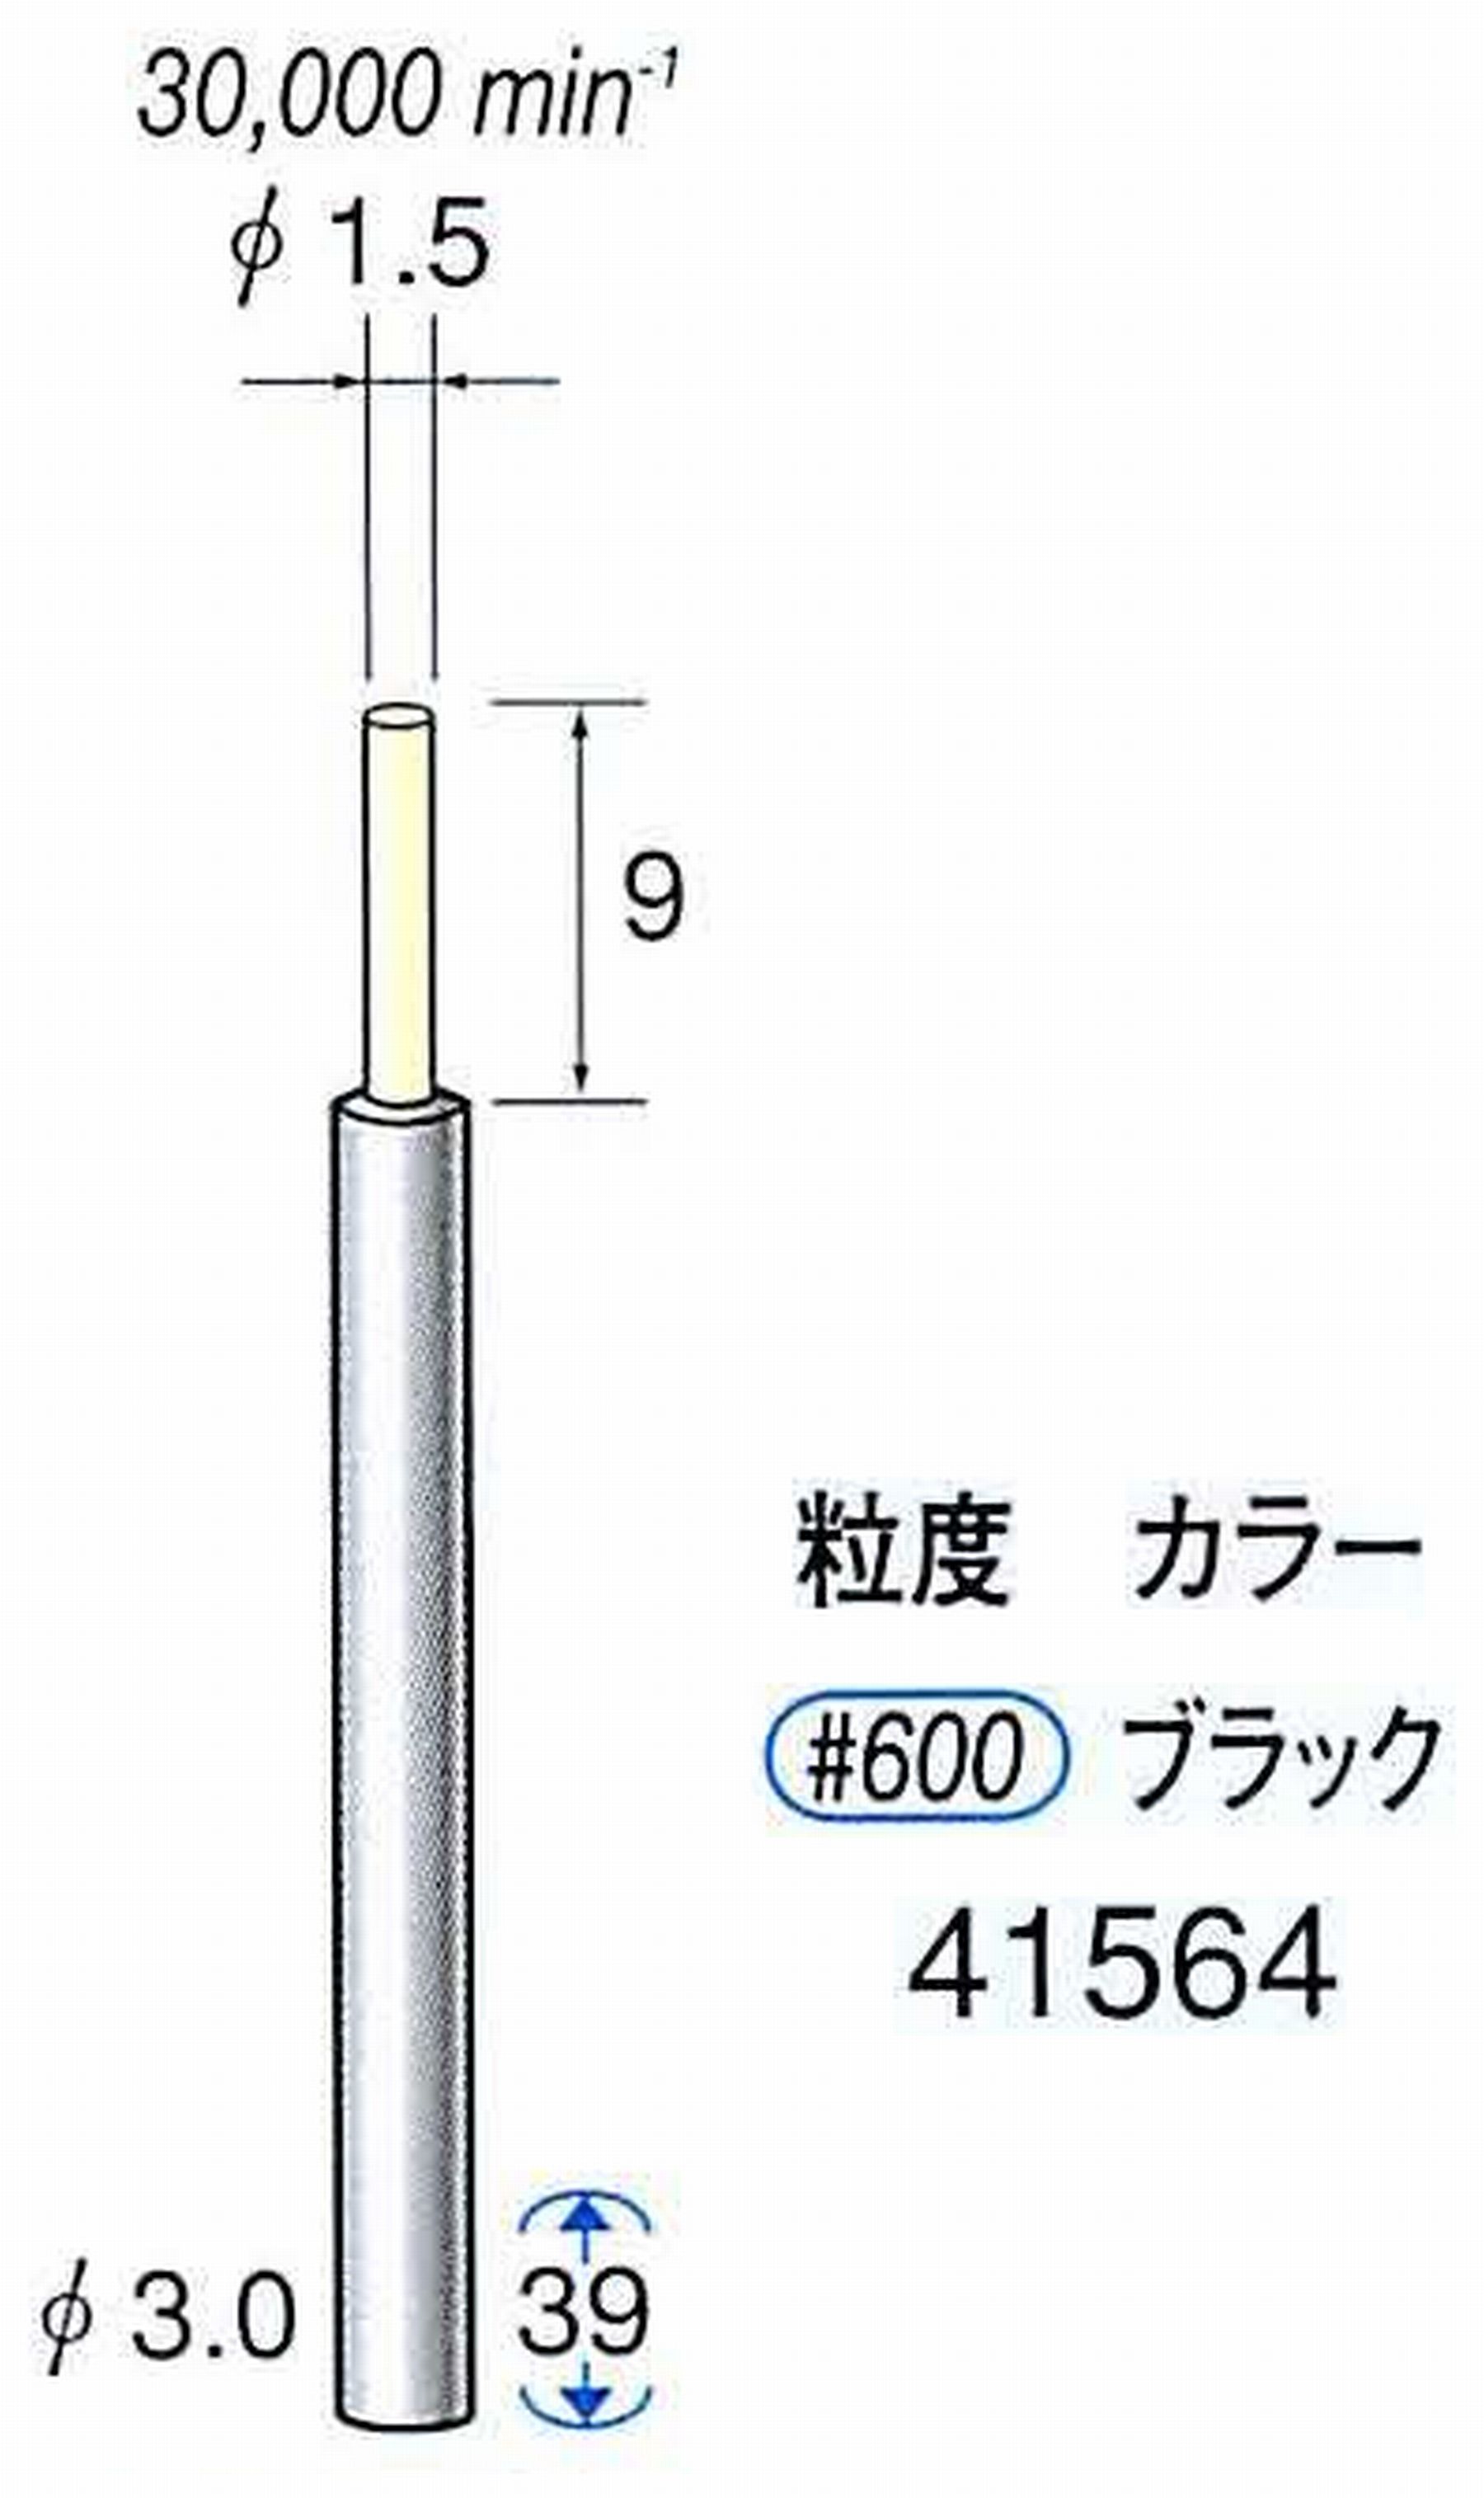 ナカニシ/NAKANISHI セラファイバー精密軸付砥石(カラー ブラック) 軸径(シャンク) φ3.0mm 41564